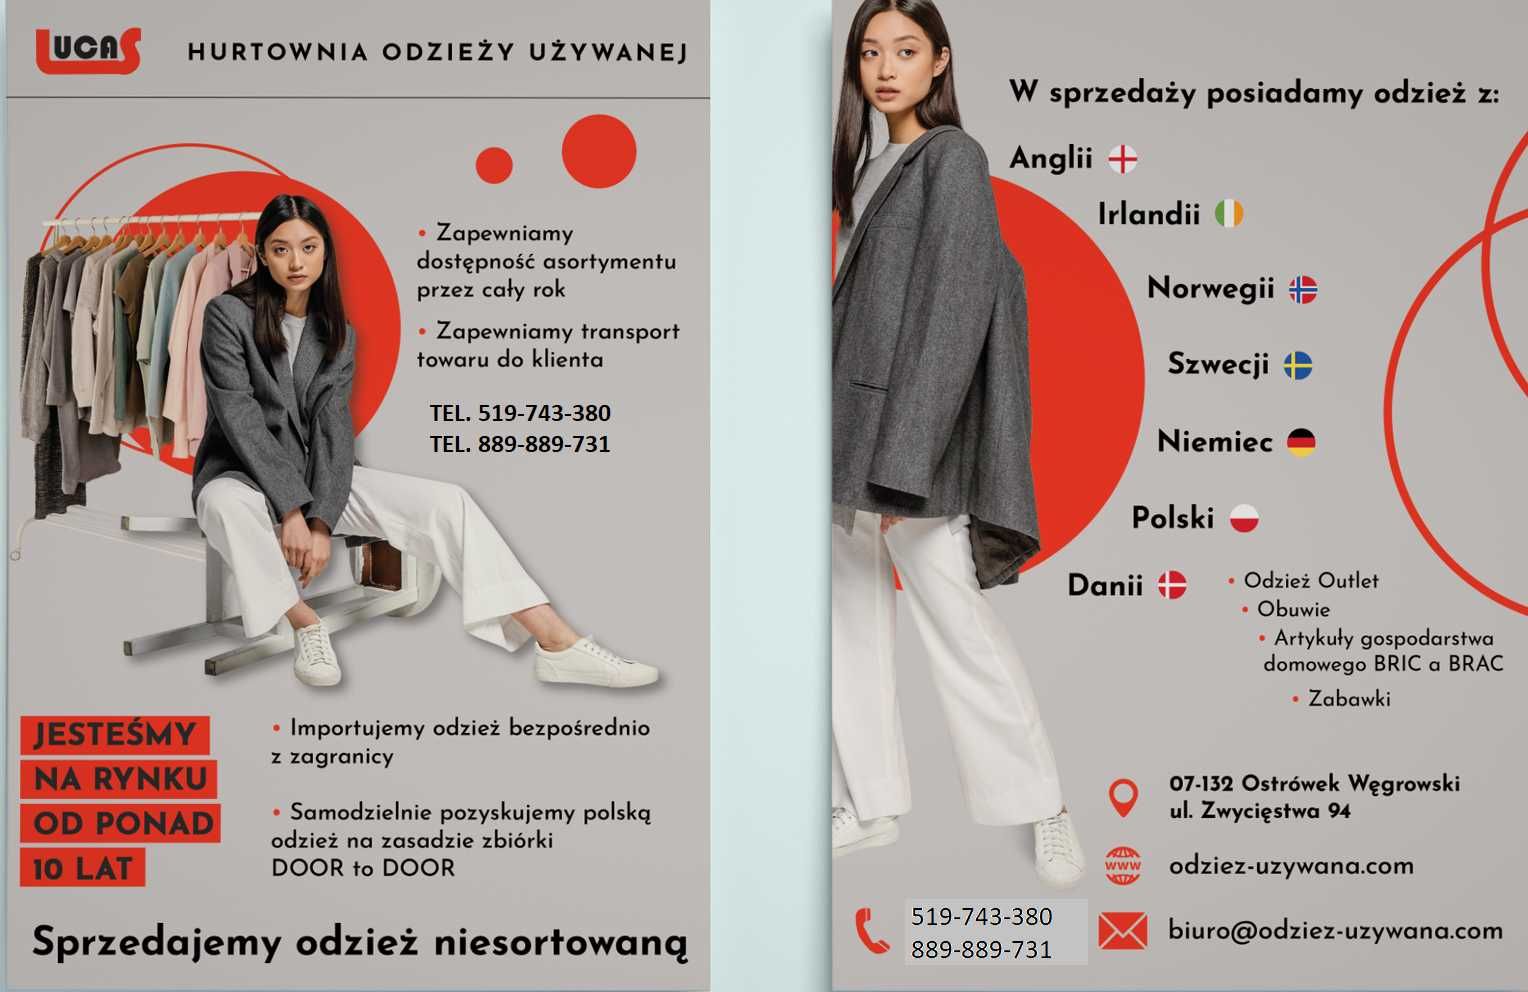 Odzież używana niesortowana - niesort polski - zbiórka polska D2D